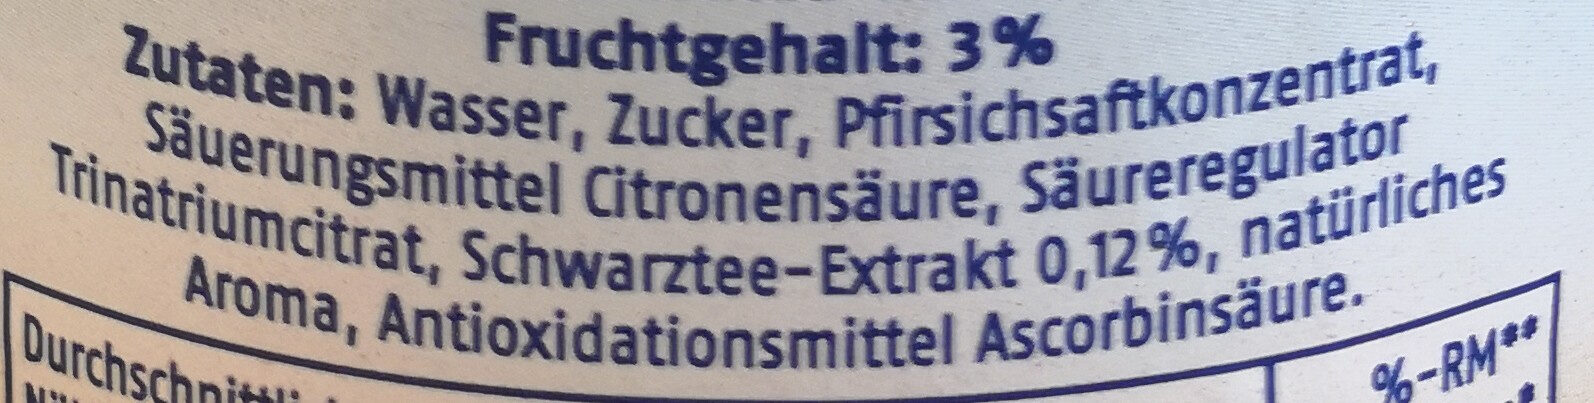 Eistee Pfirsich - Ingredients - de